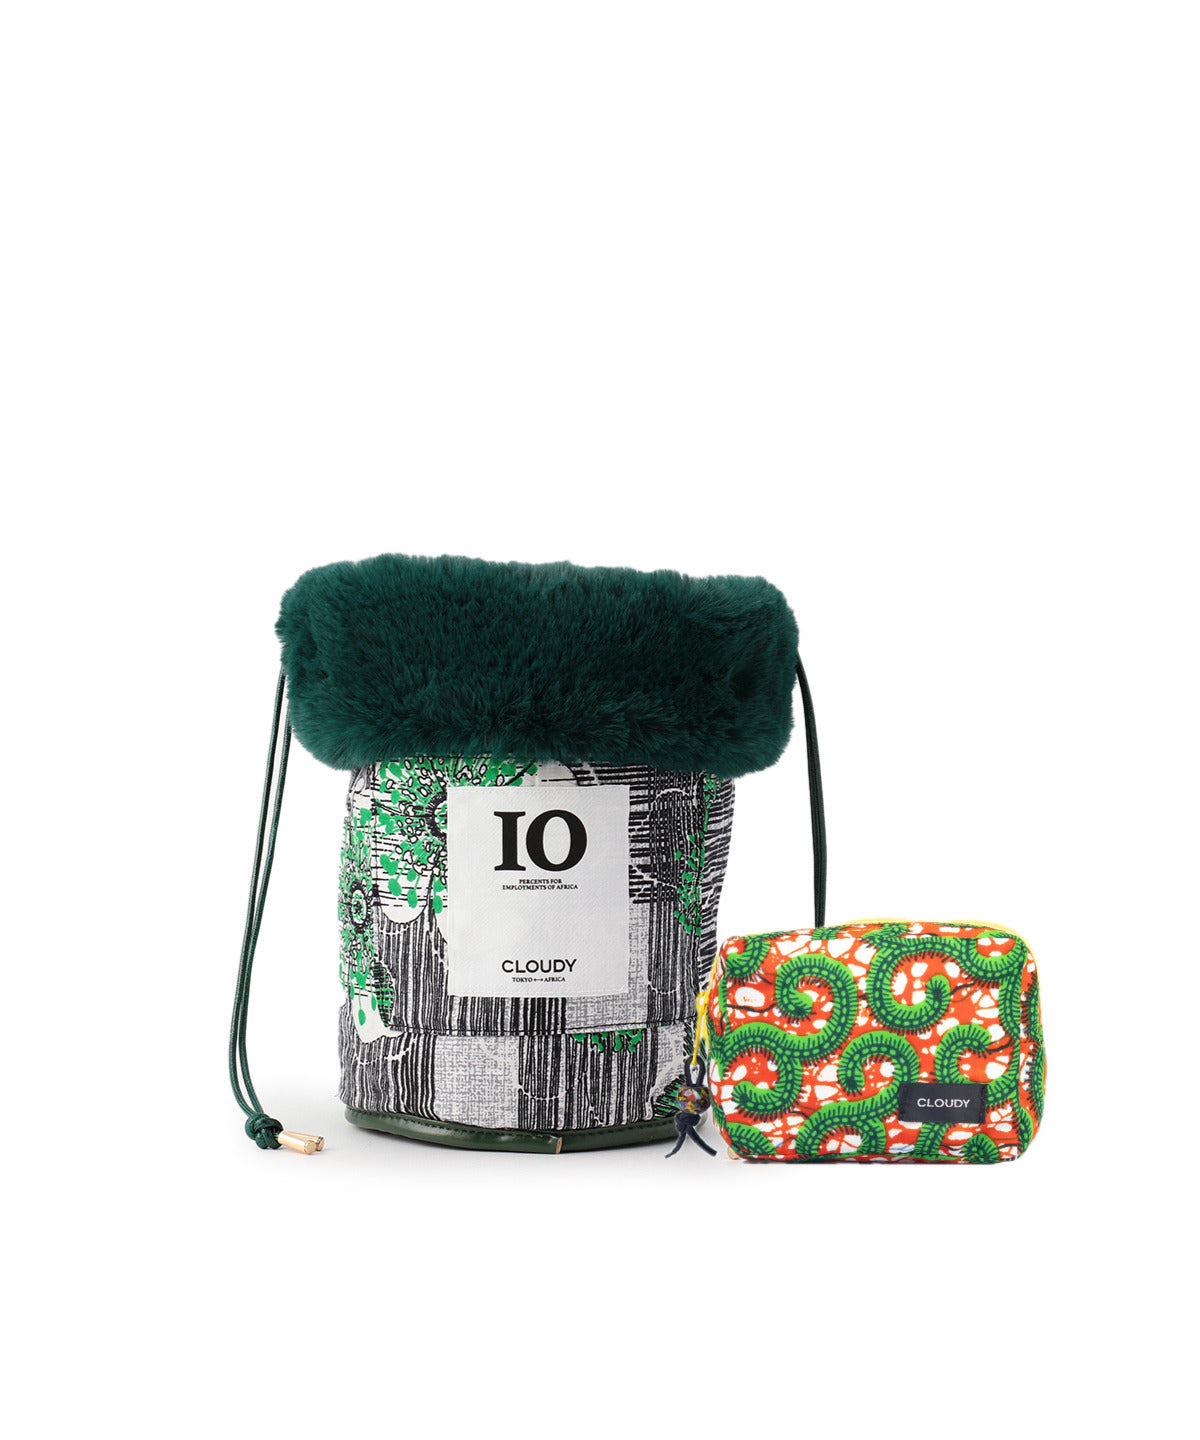 【期間限定ポーチS付き】Eco Fur Drawstring Bag (Small) GREEN